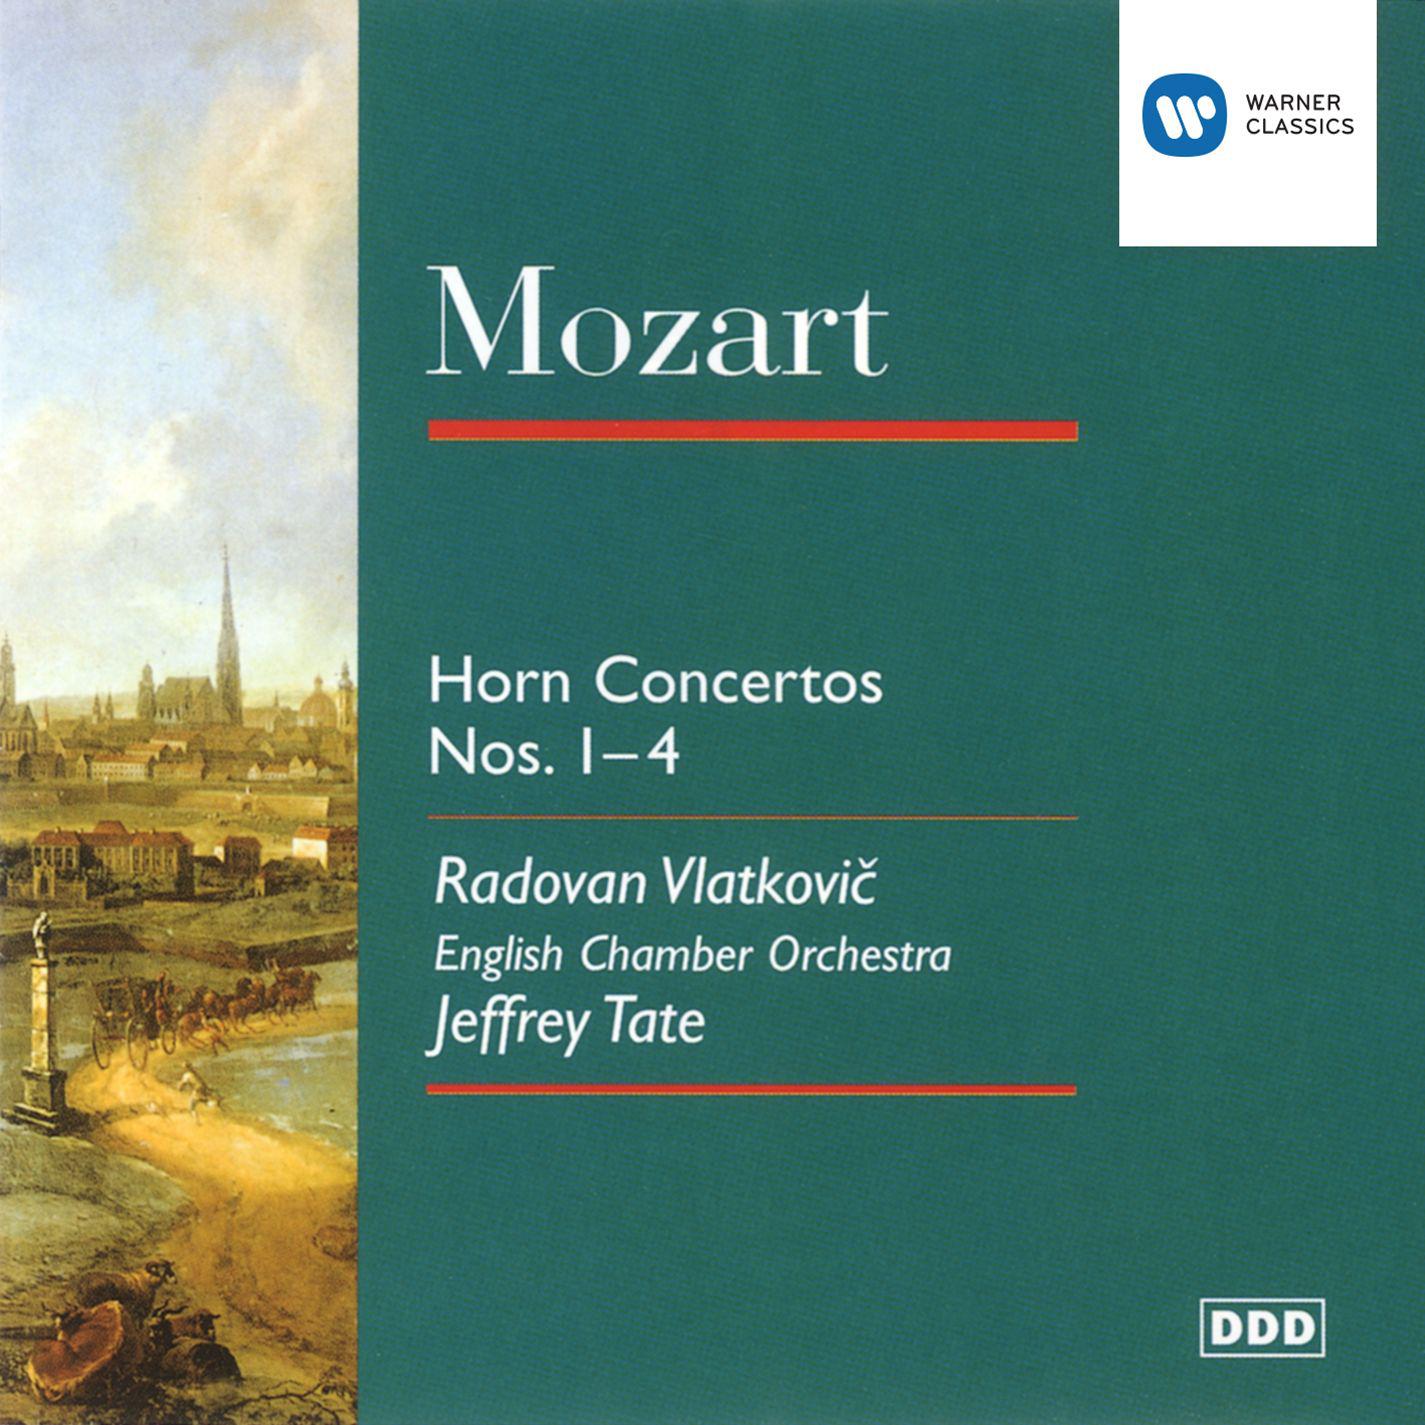 Horn Concerto No. 4 in E-Flat Major, K. 495: III. Rondo - Allegro vivace